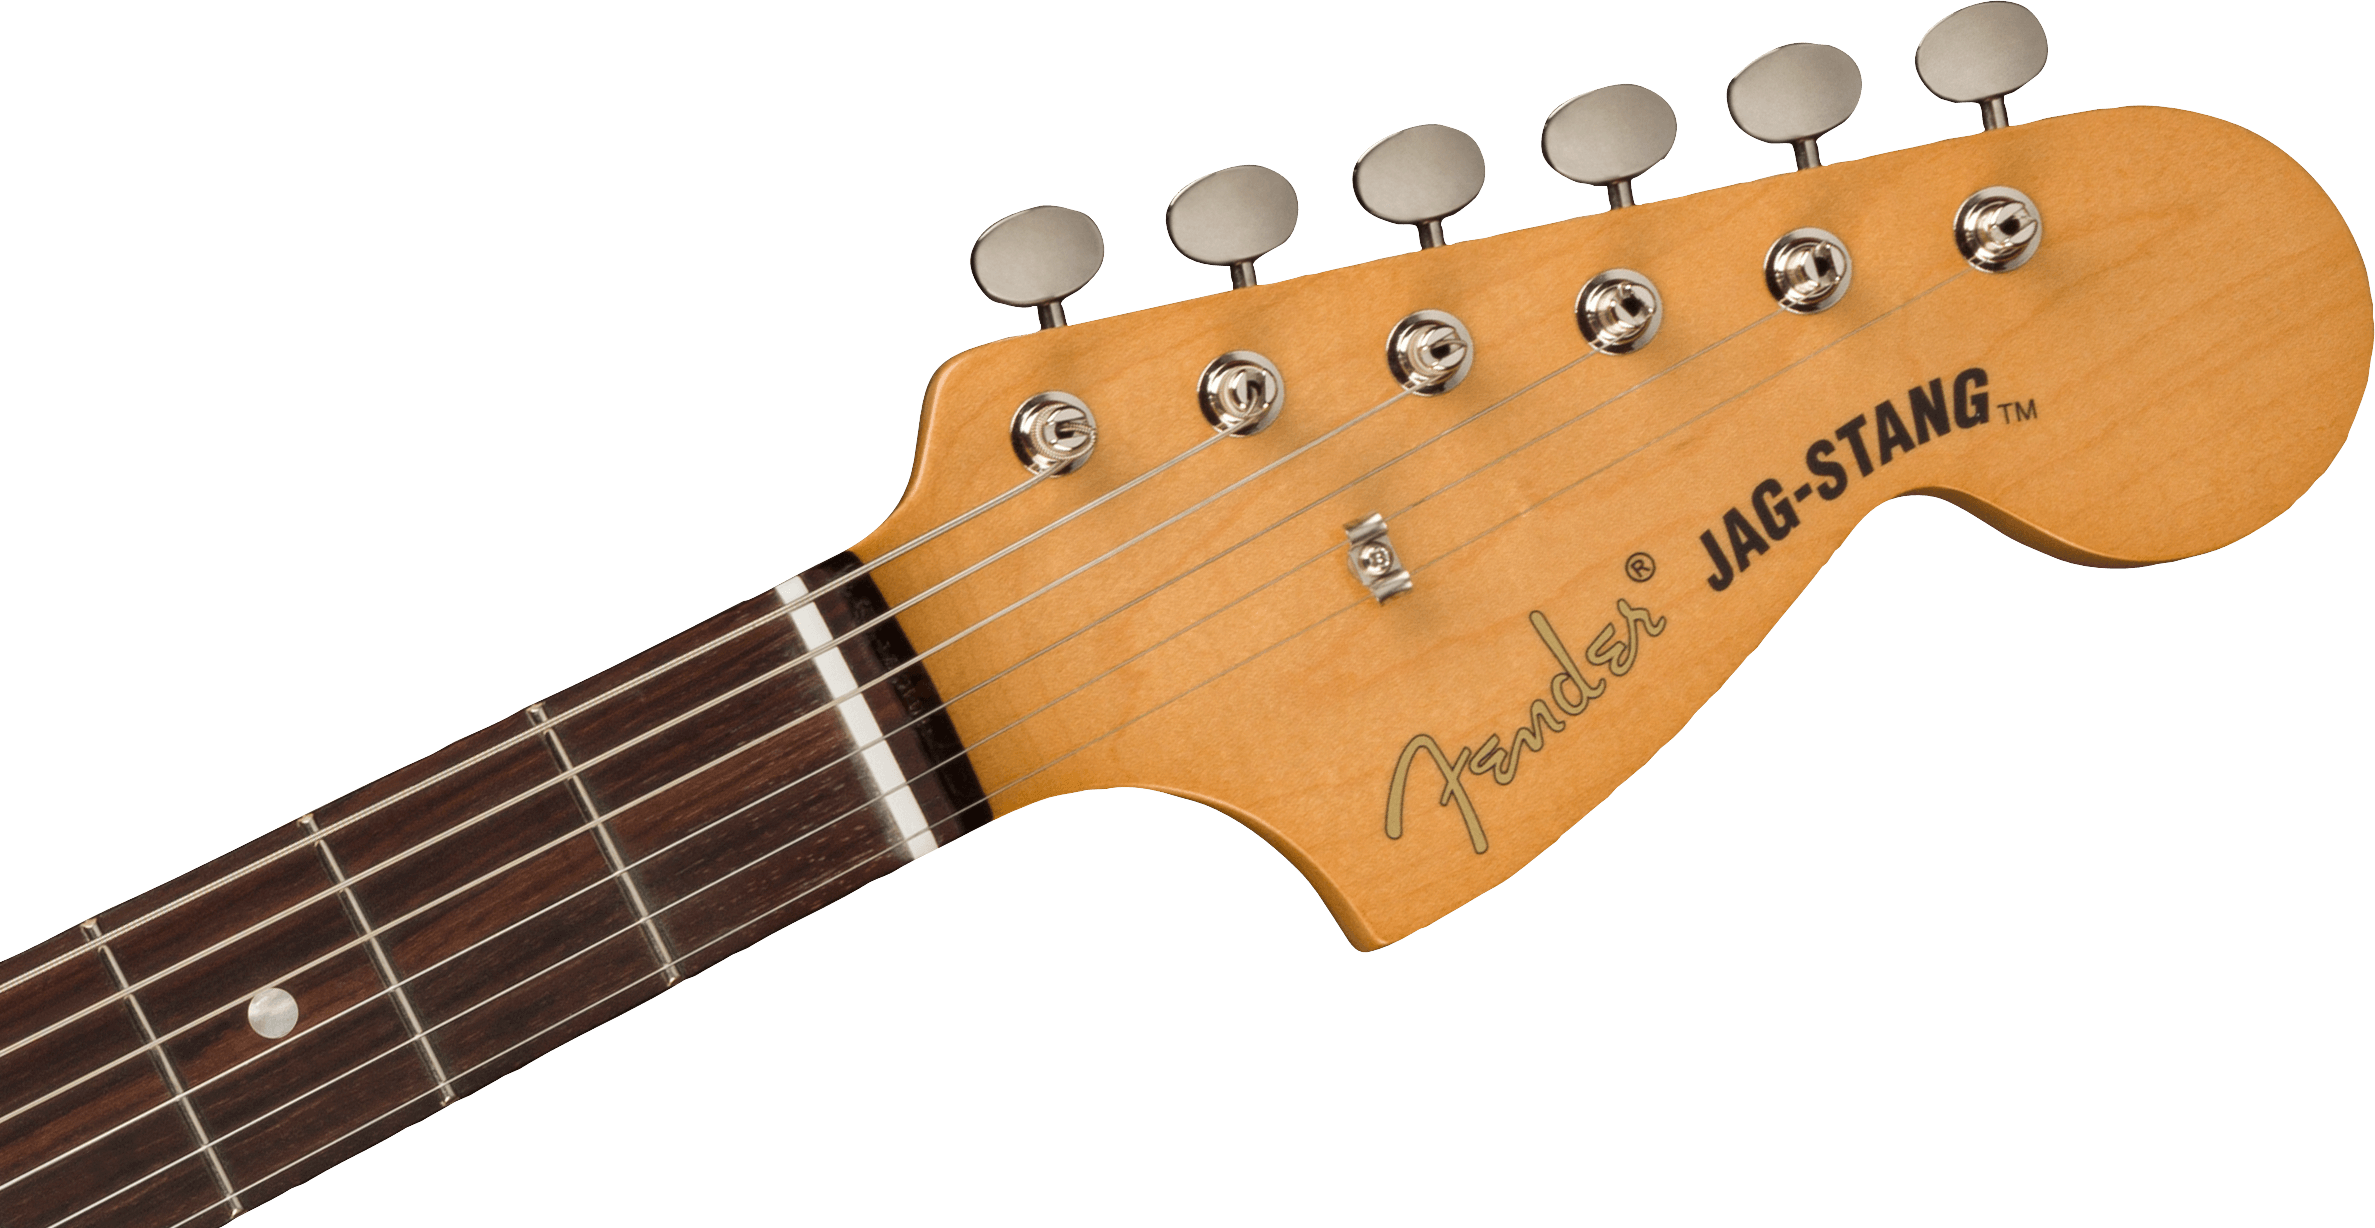 Fender Jag-stang Kurt Cobain Artist Hs Trem Rw - Fiesta Red - Guitare Électrique RÉtro Rock - Variation 4